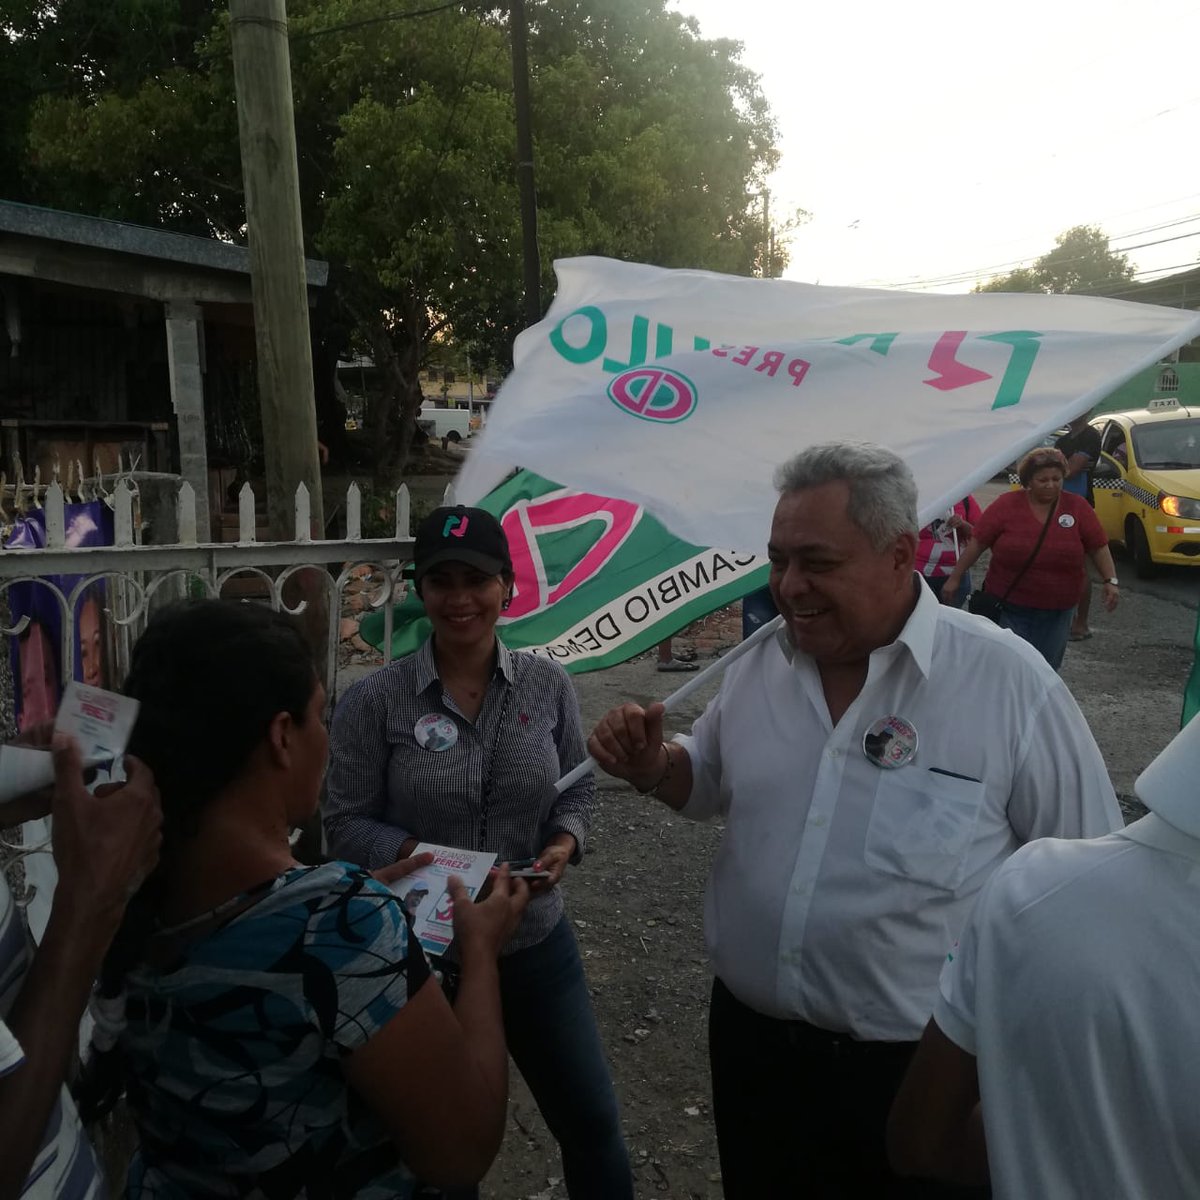 #Recorrido: Hoy estuvimos en Parque Lefevre, Panamá Viejo. Gracias a todos los que nos recibieron en sus casas. #Vota3 #VotaPorAlejandro #Ocho8